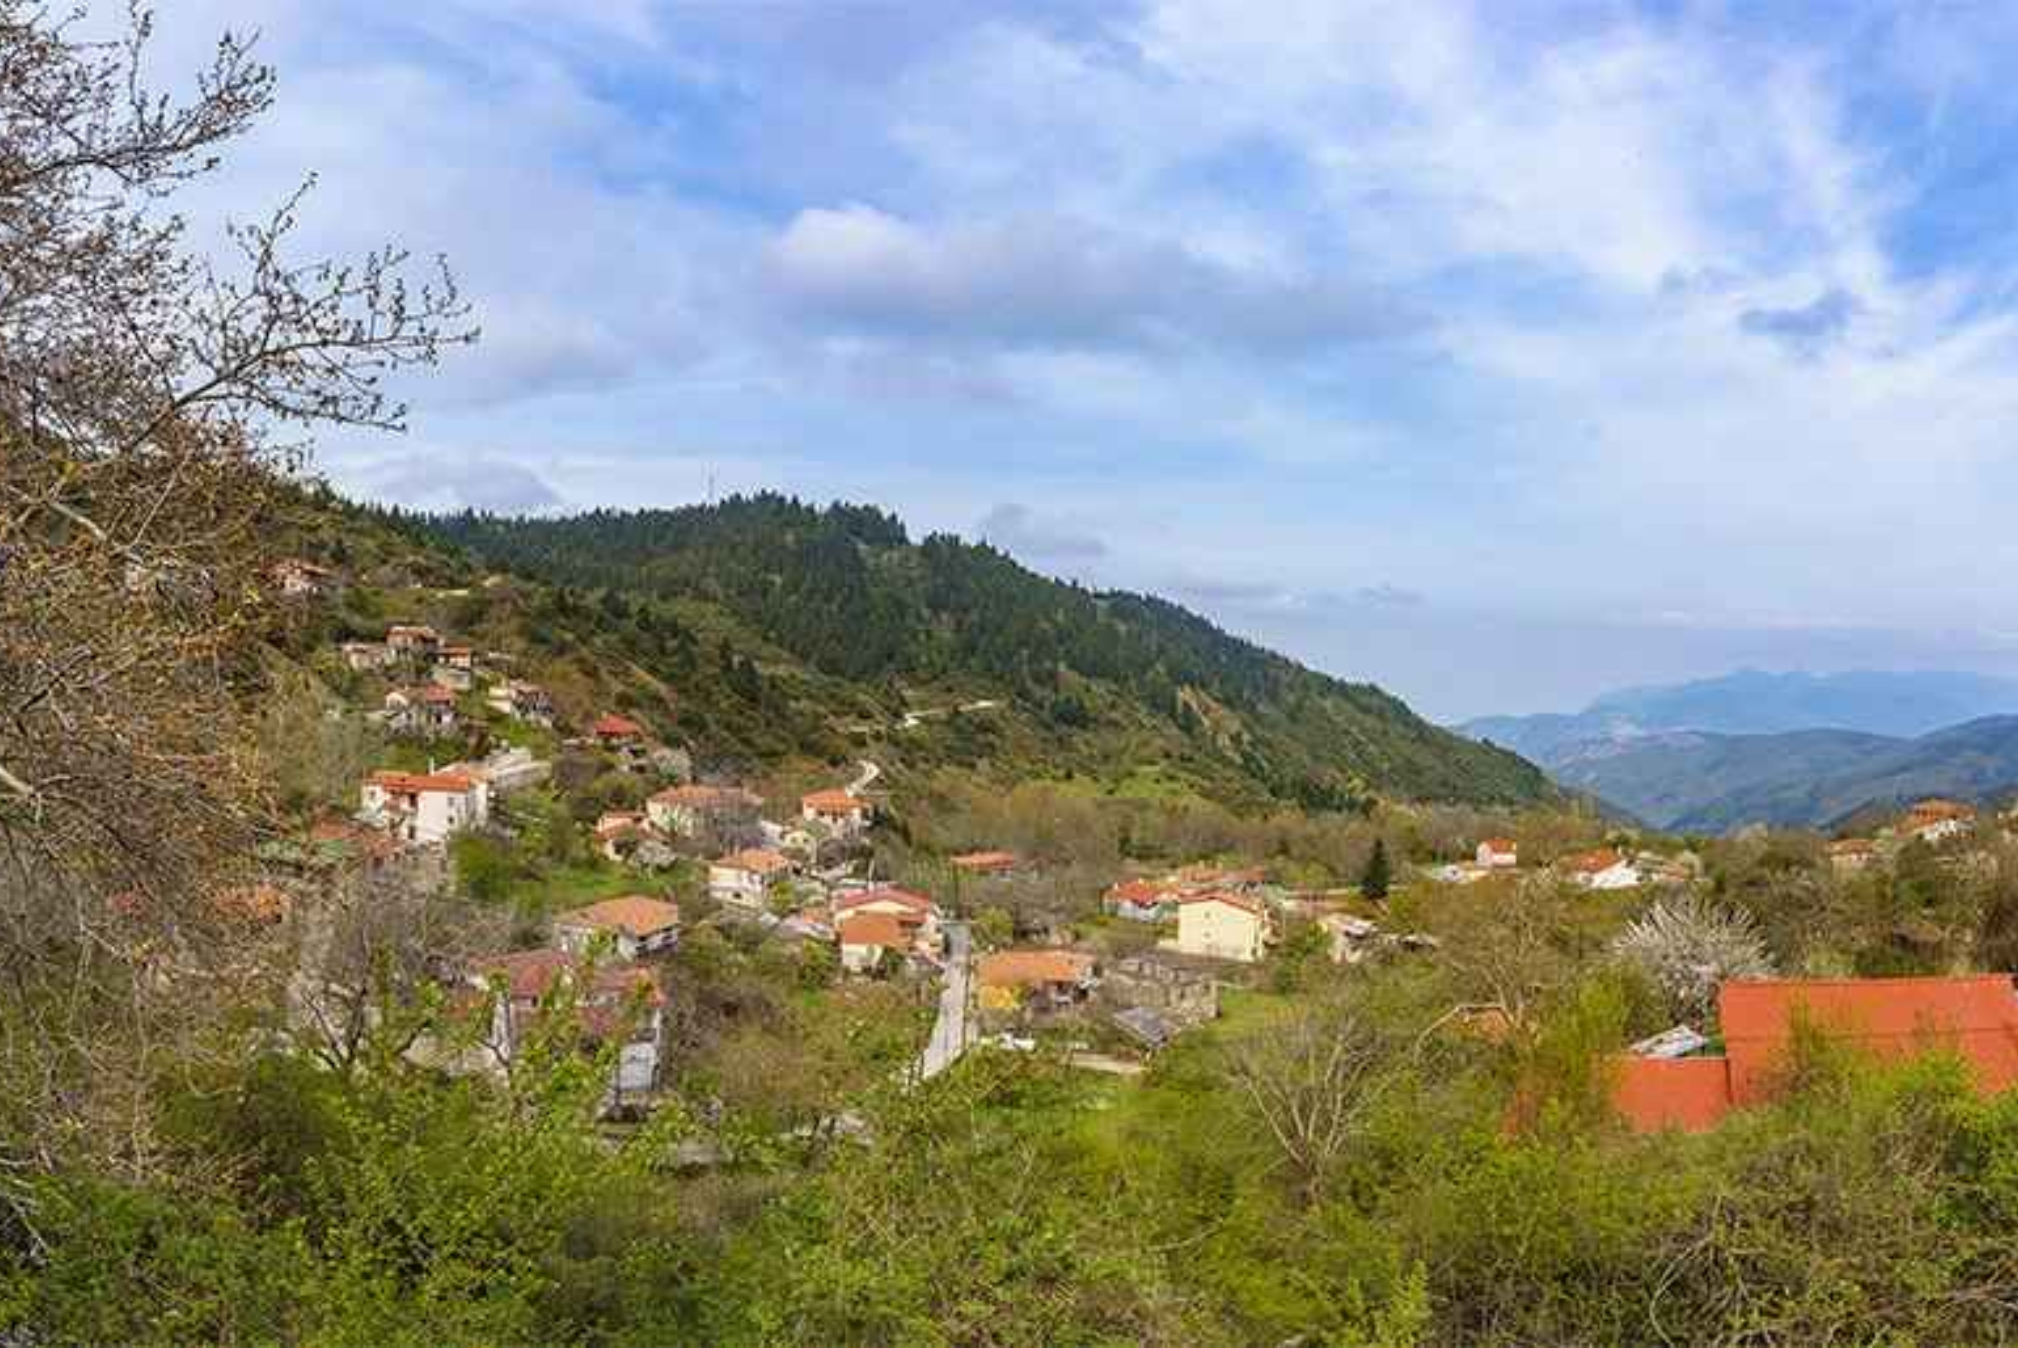 Παύλιανη: Το χωριό που μοιάζει βγαλμένο από παραμύθι και πρέπει να επισκεφθείς